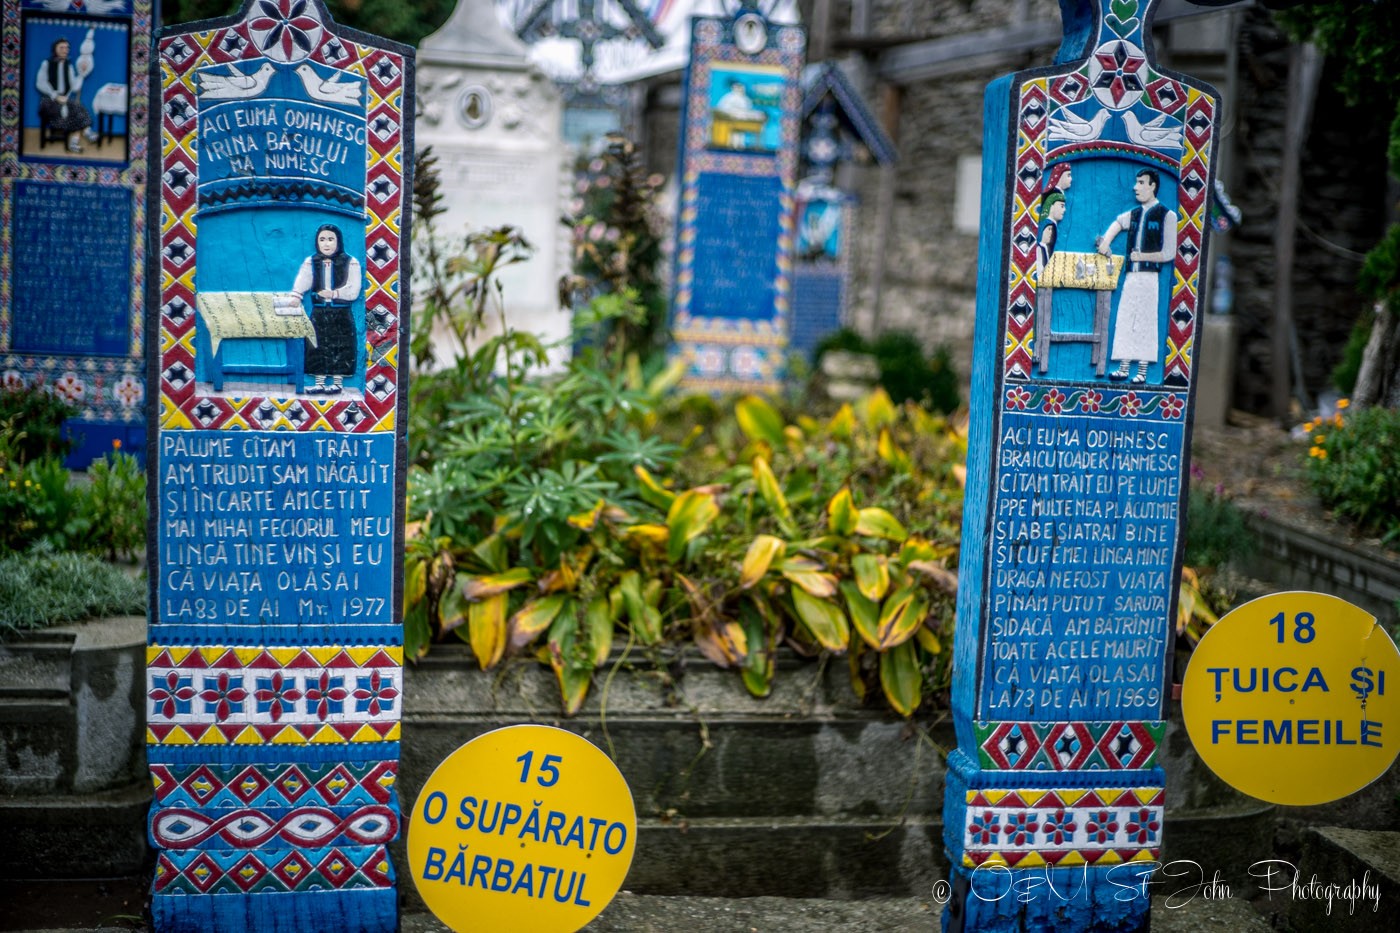 Merry Cemetery, Romania